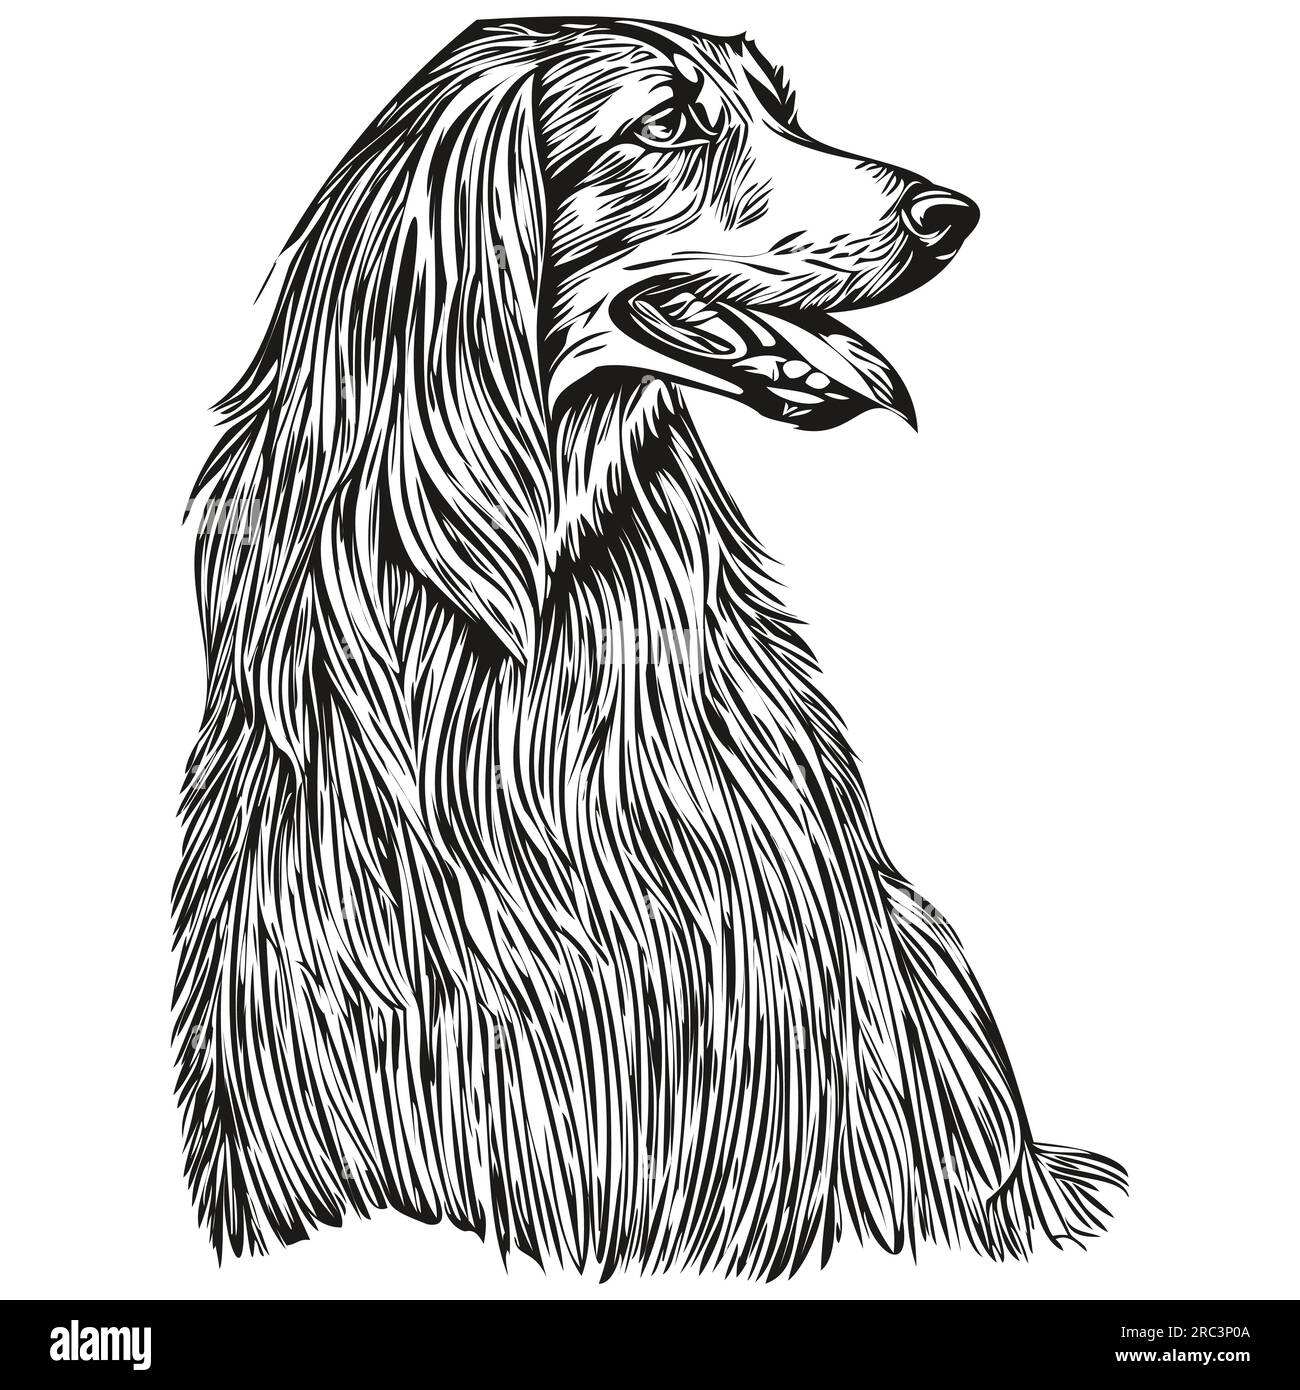 Afghan Hound Dog Logo in Schwarz und Weiß, klassischer niedlicher Hundekopf eingraviert Stock Vektor